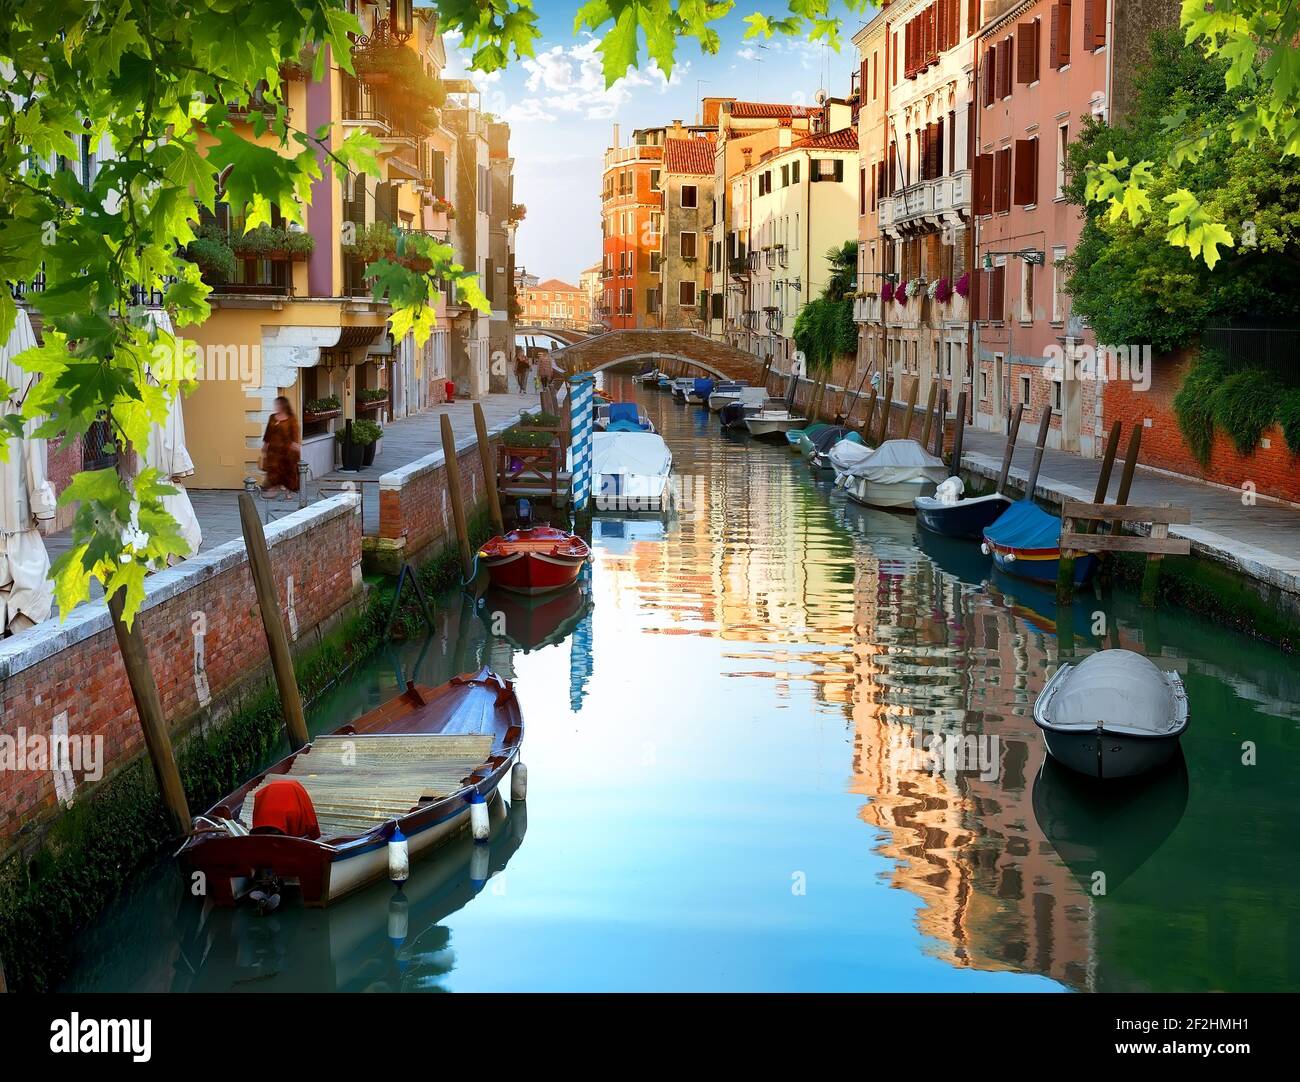 Boats in narrow venetian water canal, Italy Stock Photo